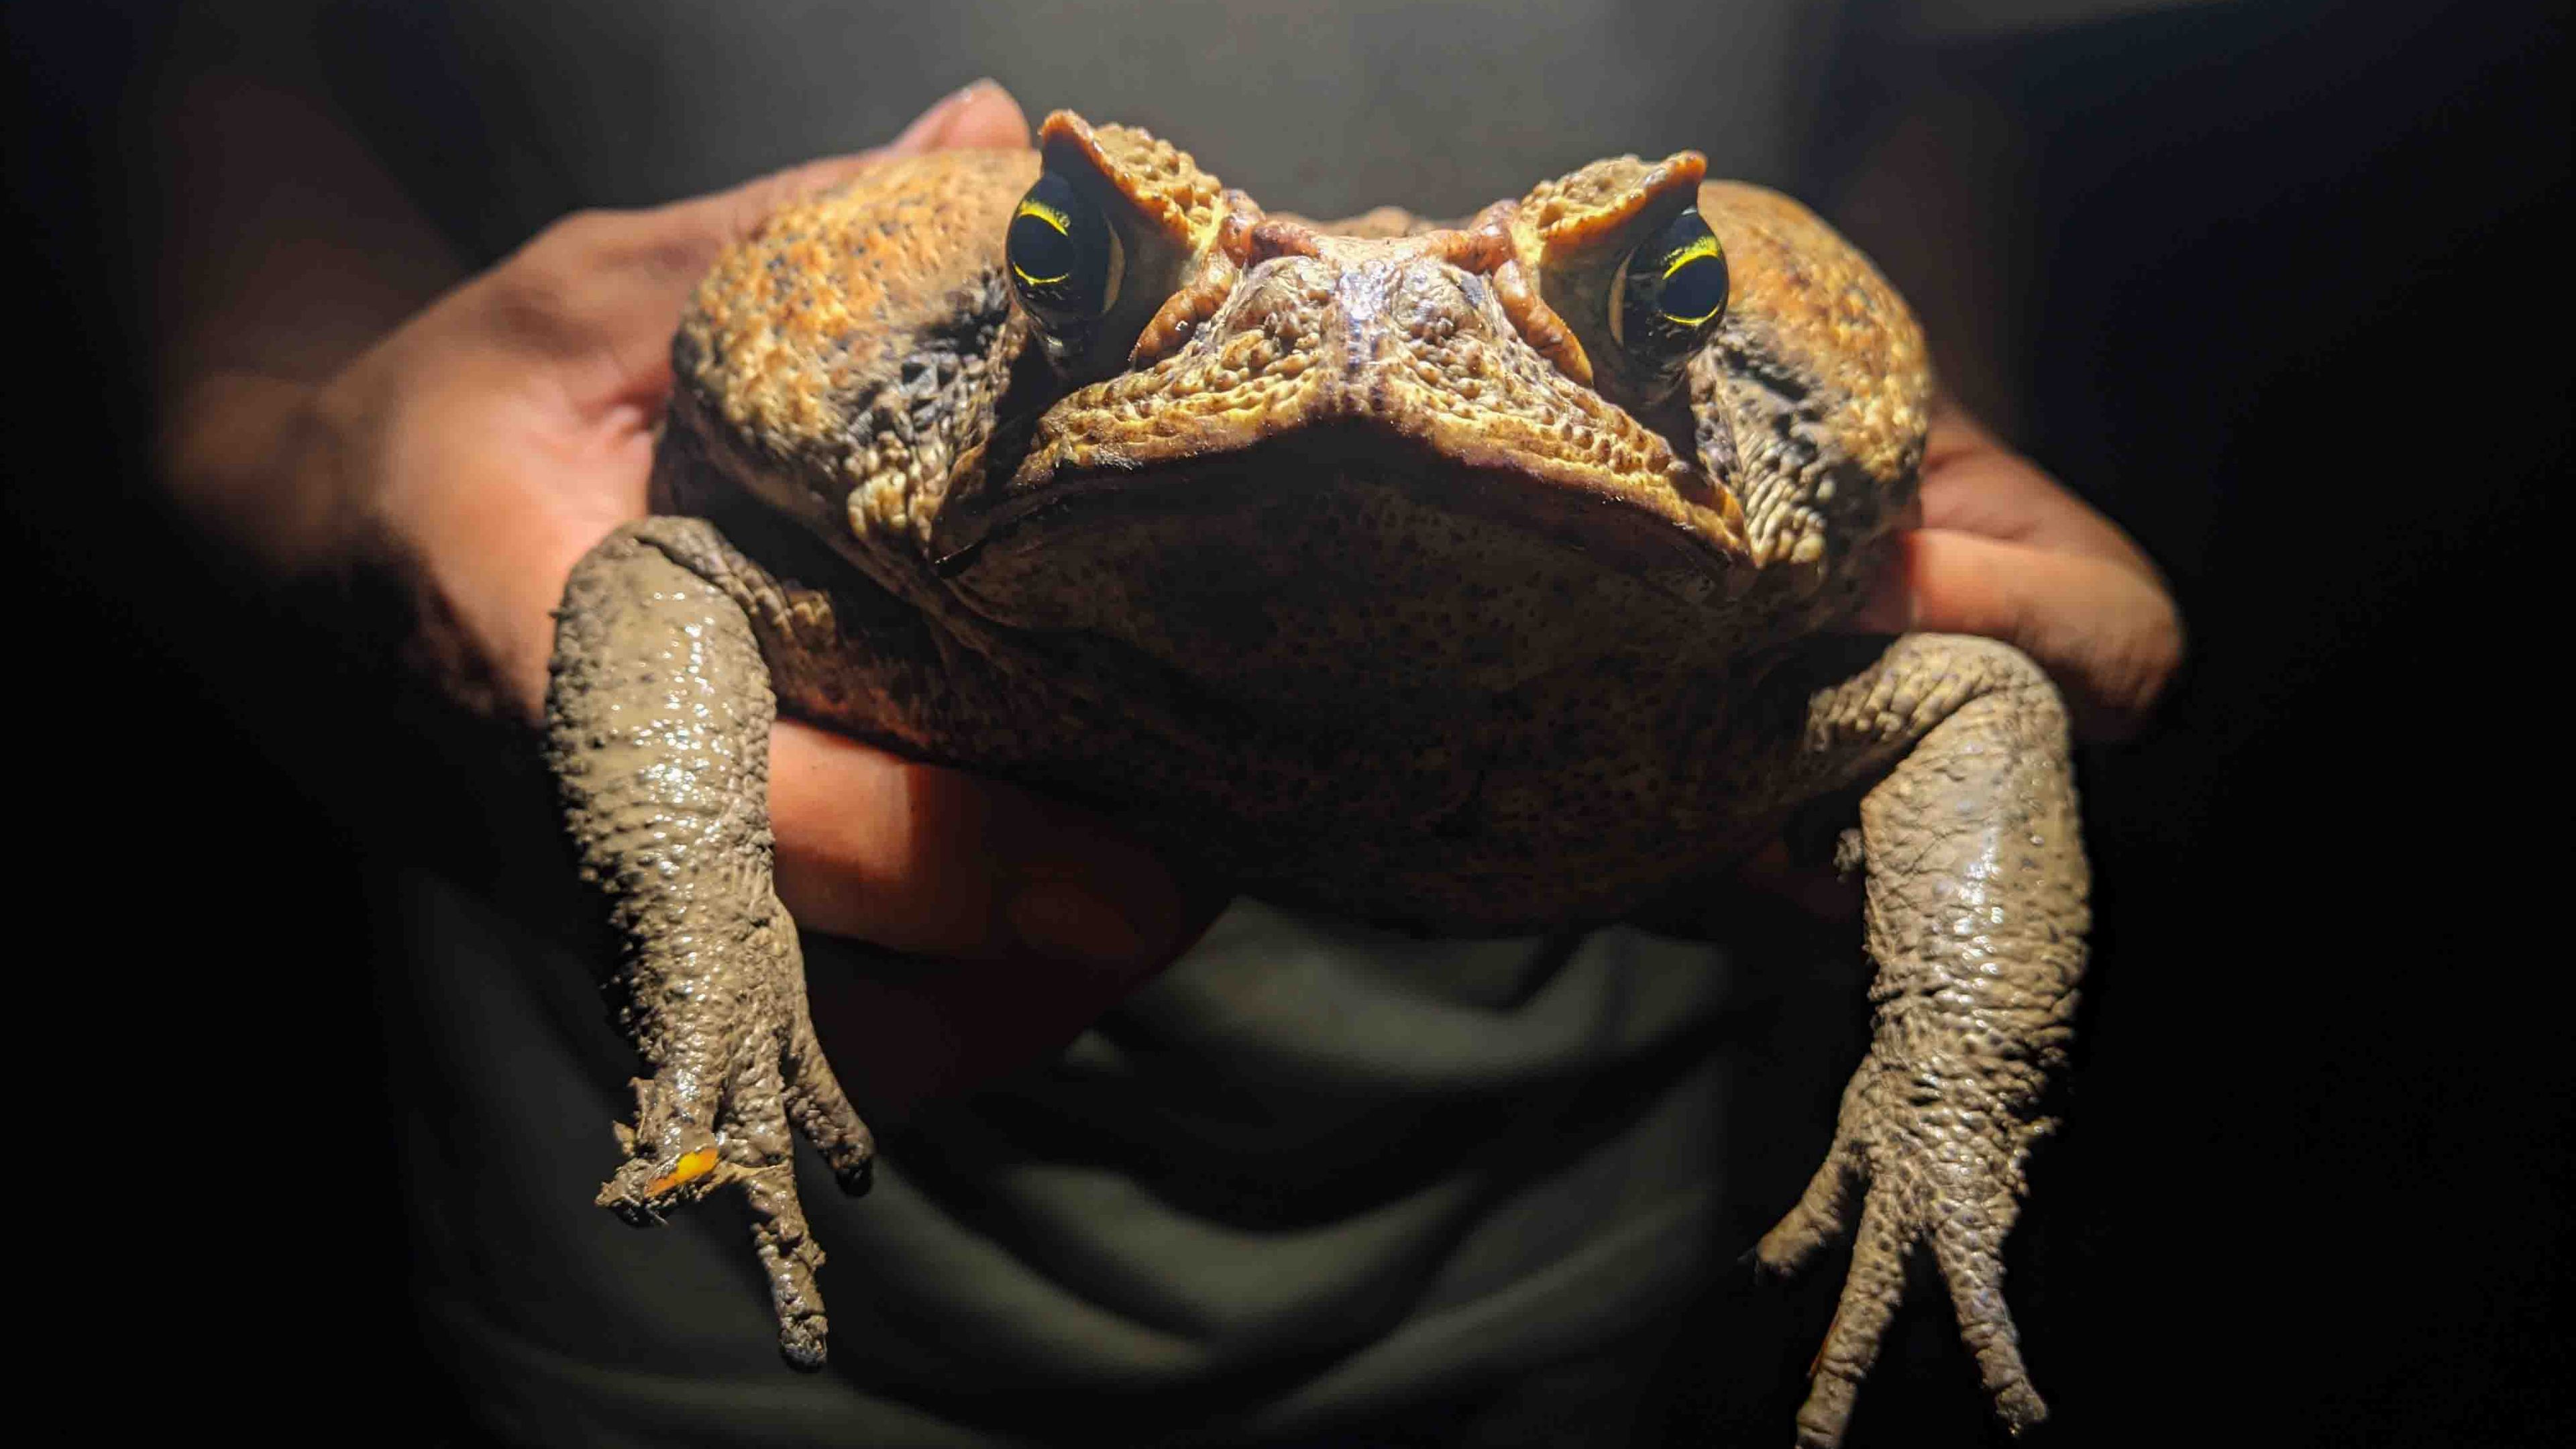 Diese Nachtaufnahme zeigt eine Aga-Kröte, auch Riesenkröte oder Cane Toad genannt, aus Peru, welche mit zwei Händen gehalten und frontal in die Kamera gehalten.